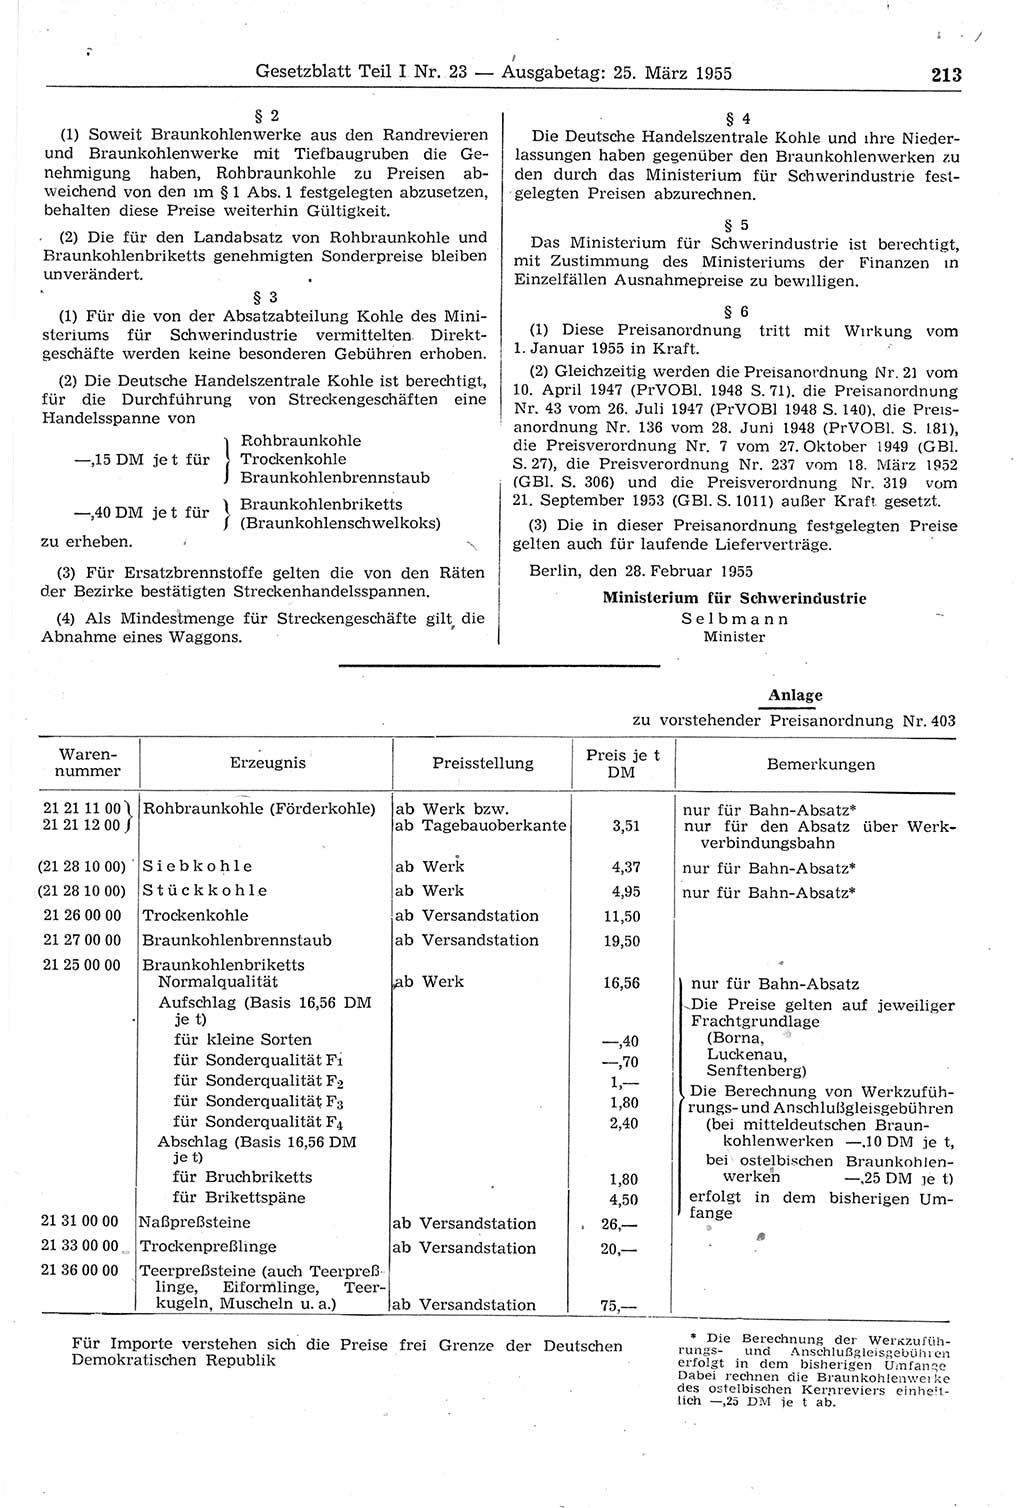 Gesetzblatt (GBl.) der Deutschen Demokratischen Republik (DDR) Teil Ⅰ 1955, Seite 213 (GBl. DDR Ⅰ 1955, S. 213)